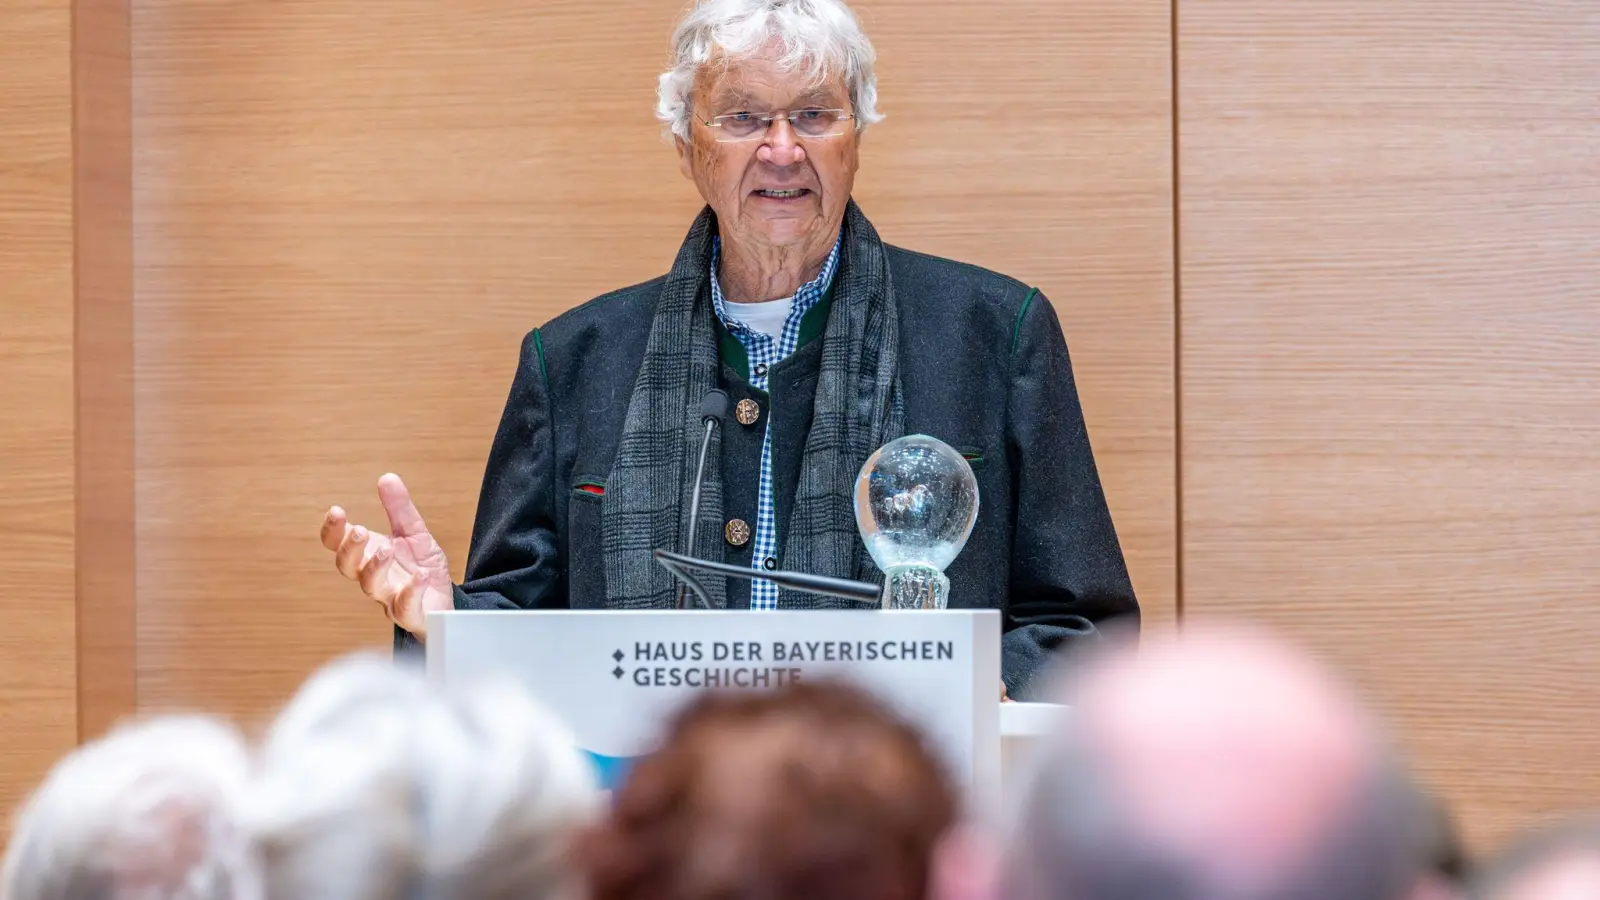 Kabarettist Gerhard Polt spricht nach seiner Auszeichnung mit der „Bairischen Sprachwurzel”. (Foto: Armin Weigel/dpa)